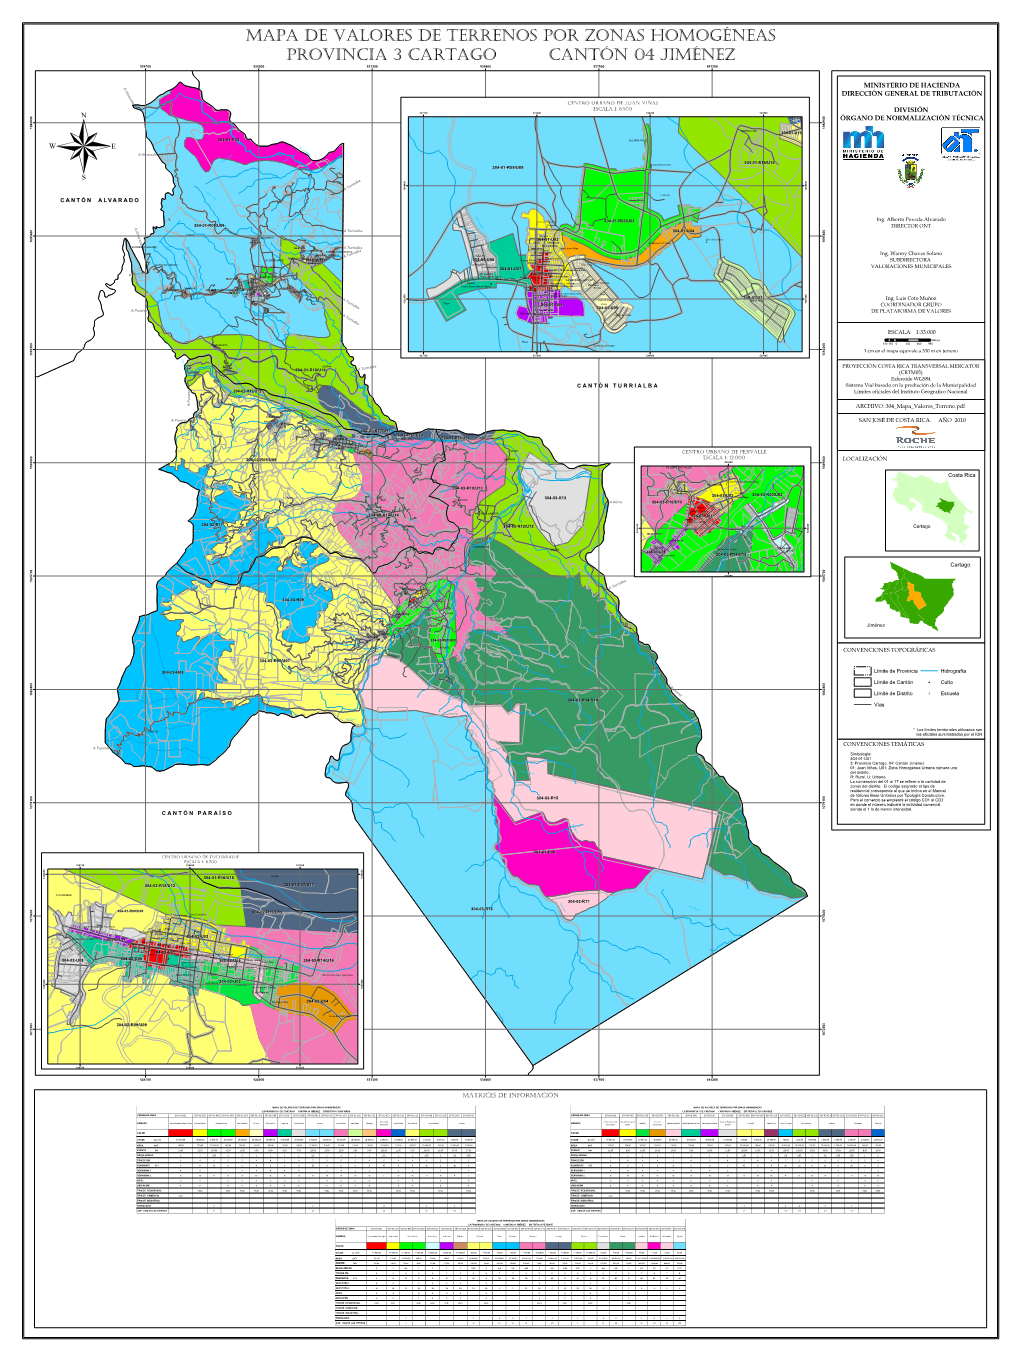 Mapa De Valores De Terrenos Por Zonas Homogéneas Provincia 3 Cartago Cantón 04 Jiménez 524700 528000 531300 534600 537900 541200